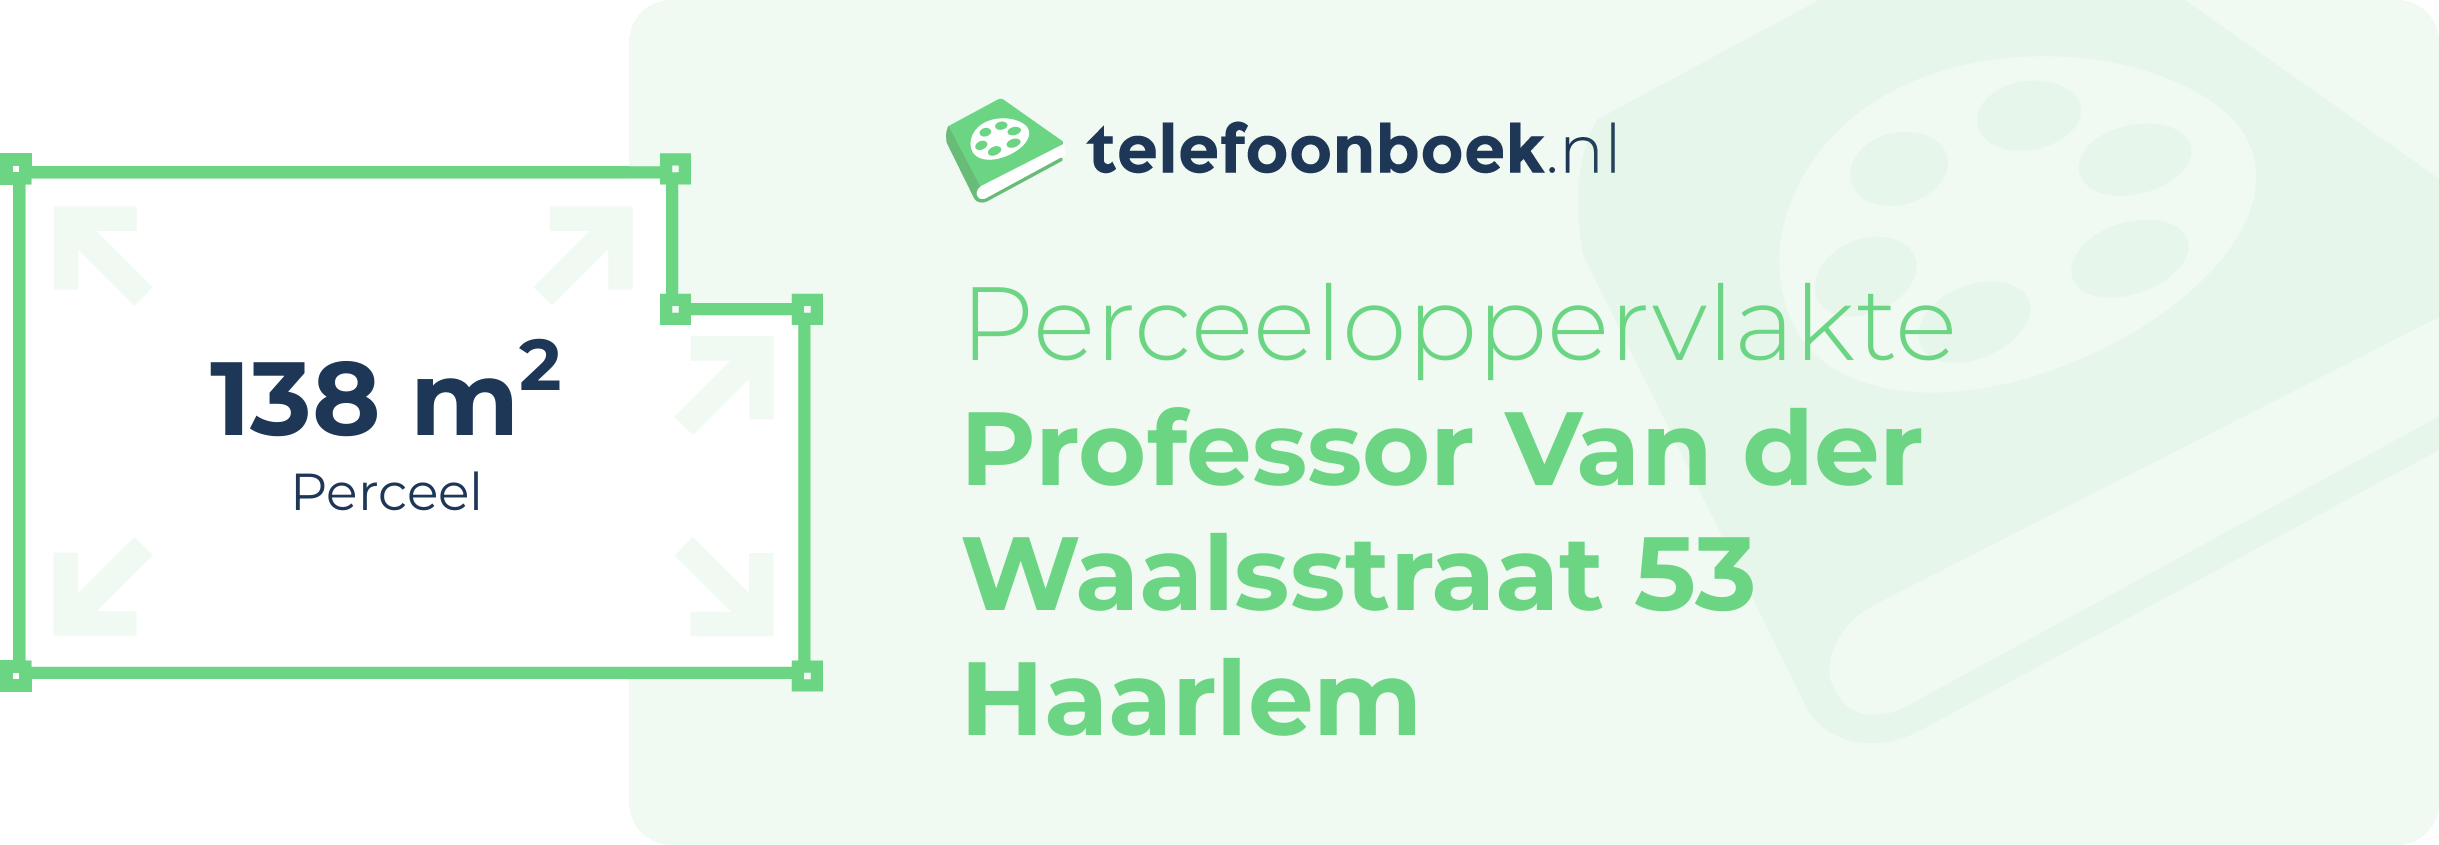 Perceeloppervlakte Professor Van Der Waalsstraat 53 Haarlem